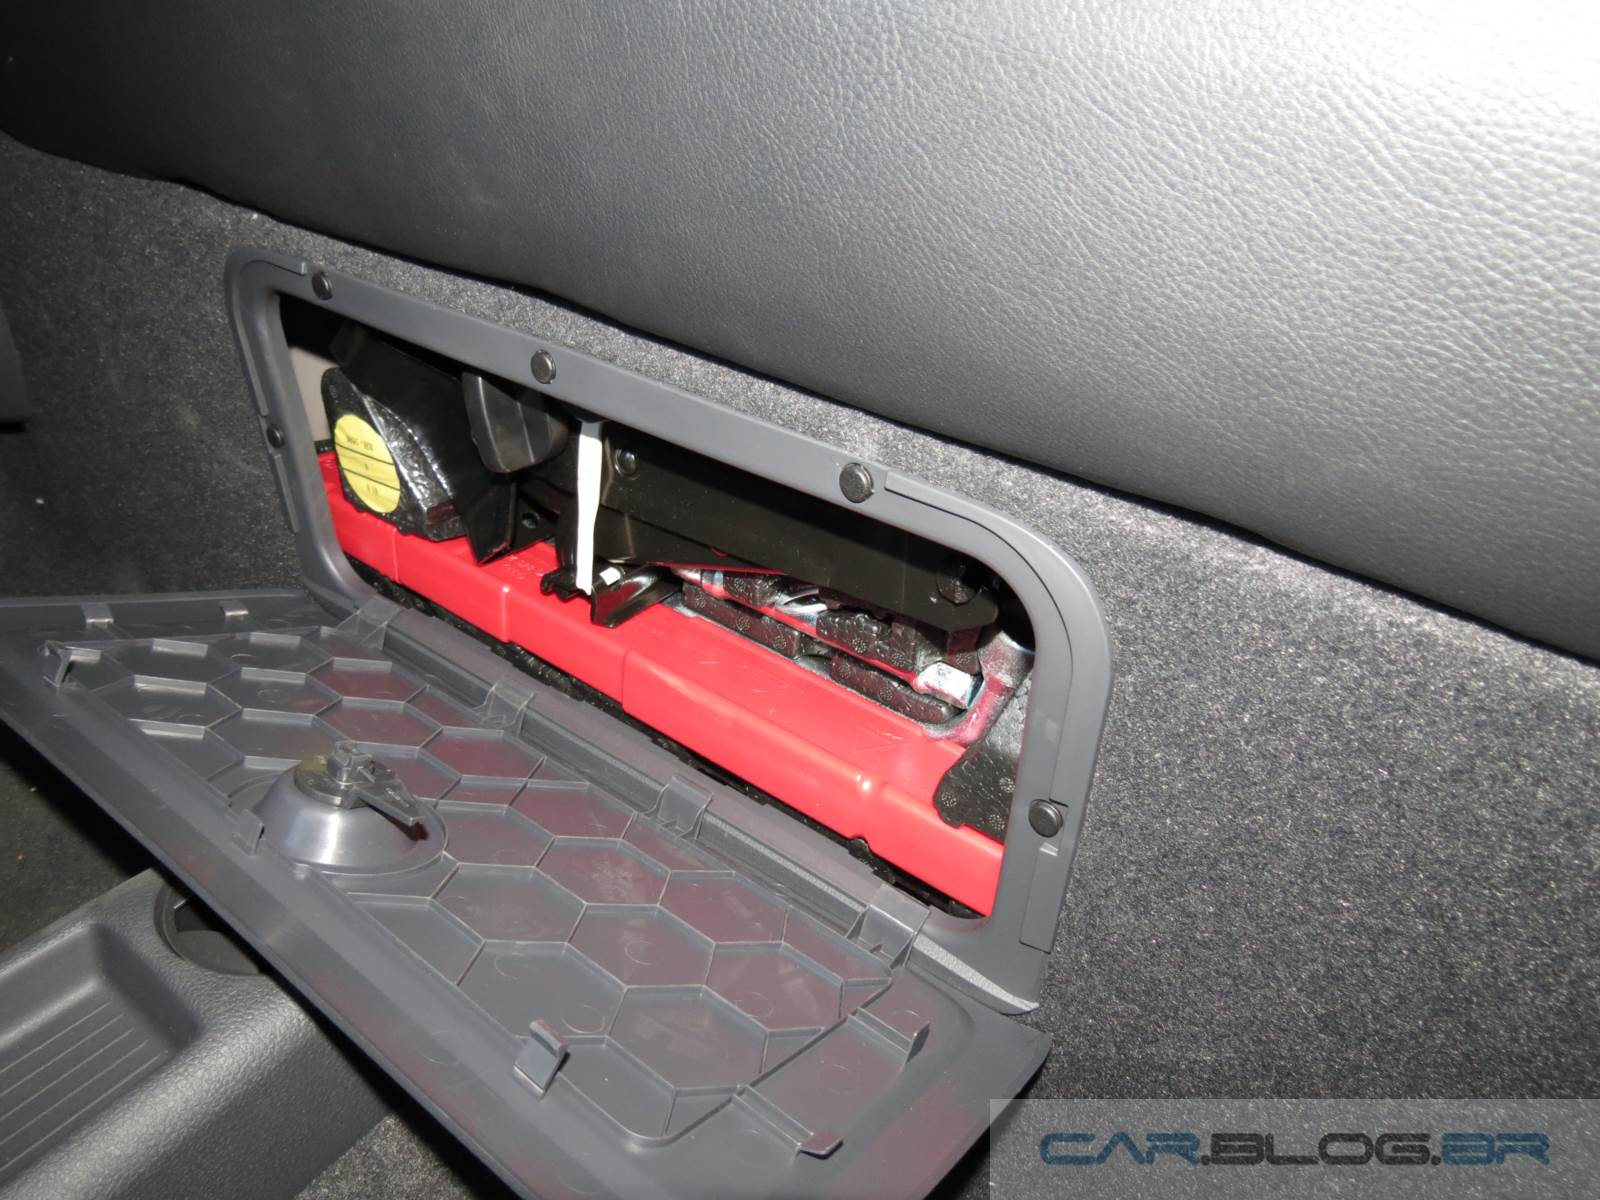 VW Saveiro Cabine Dupla - interior